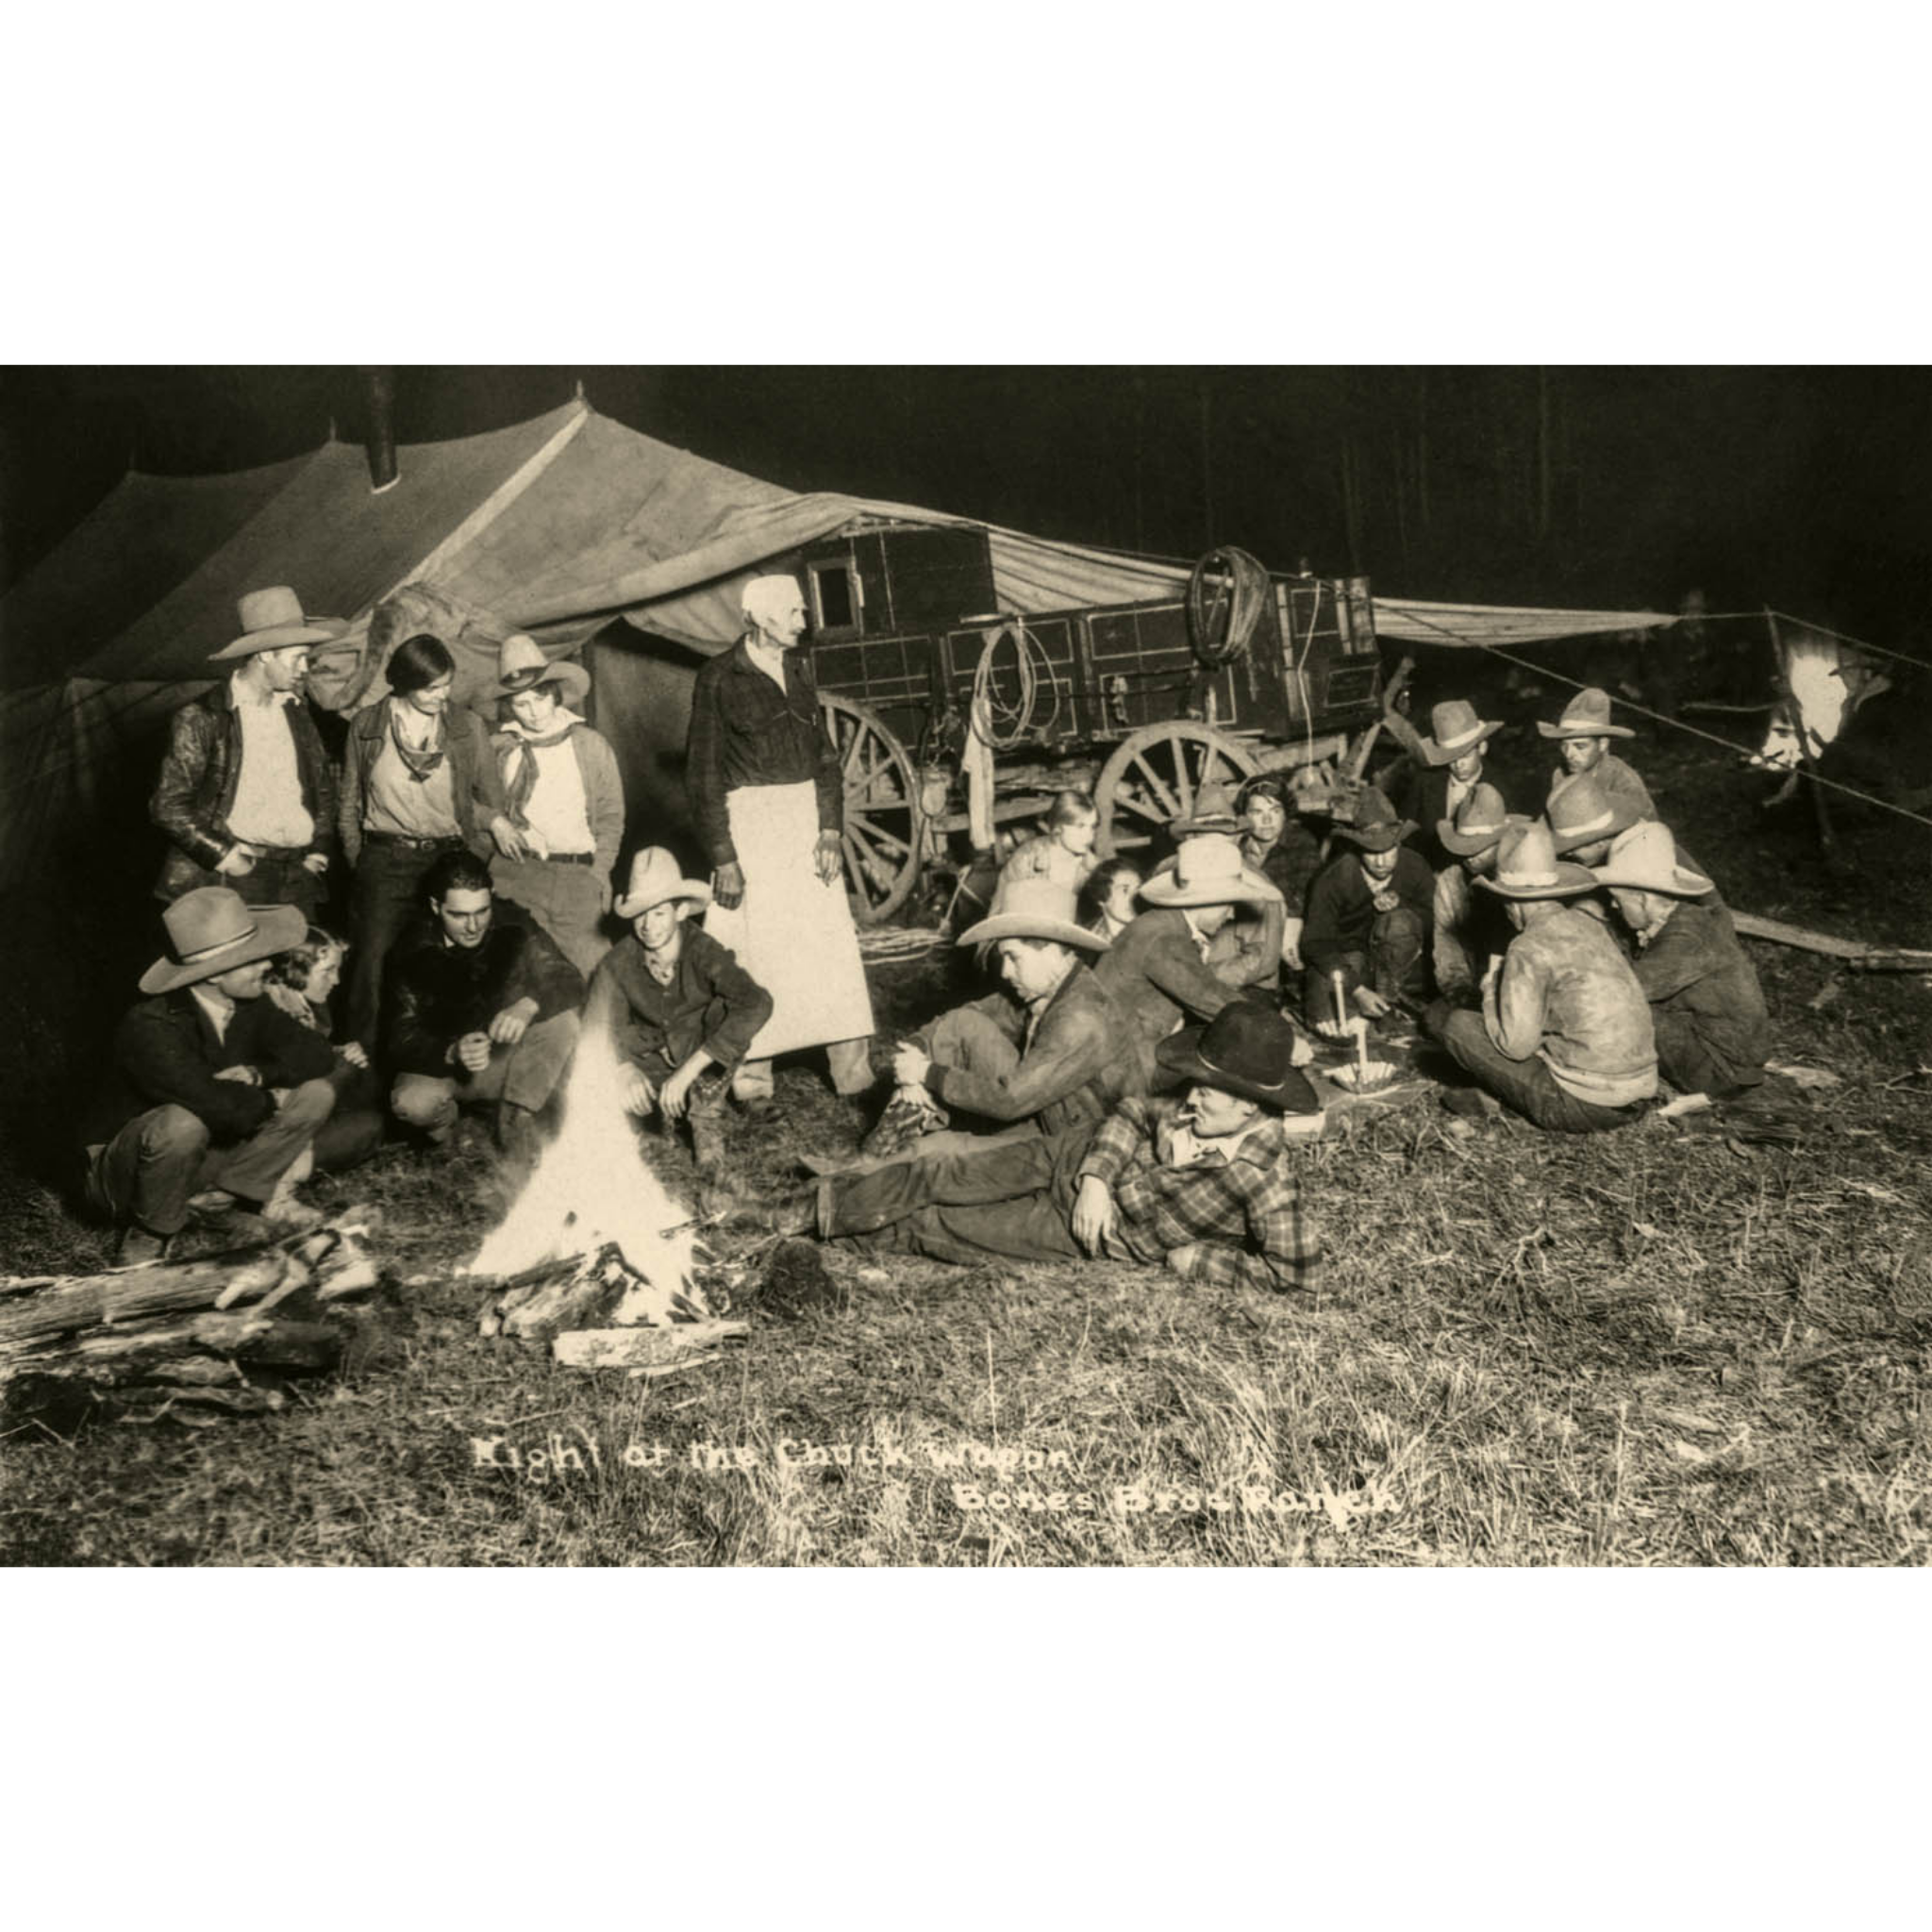 Bones Ranch: Night at the Chuckwagon - ca. 1930 Photograph